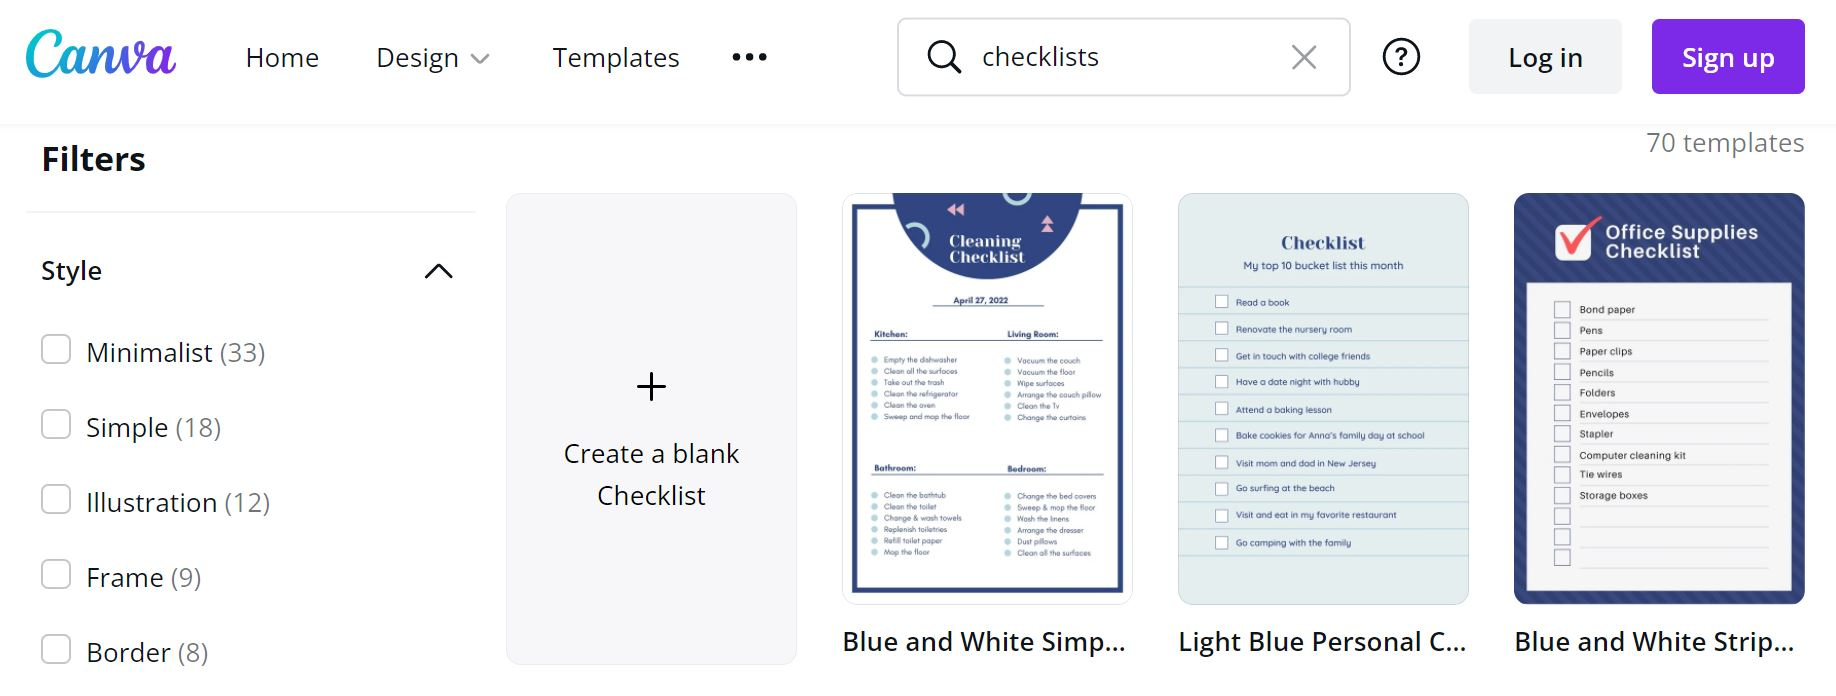 Canva's checklist templates